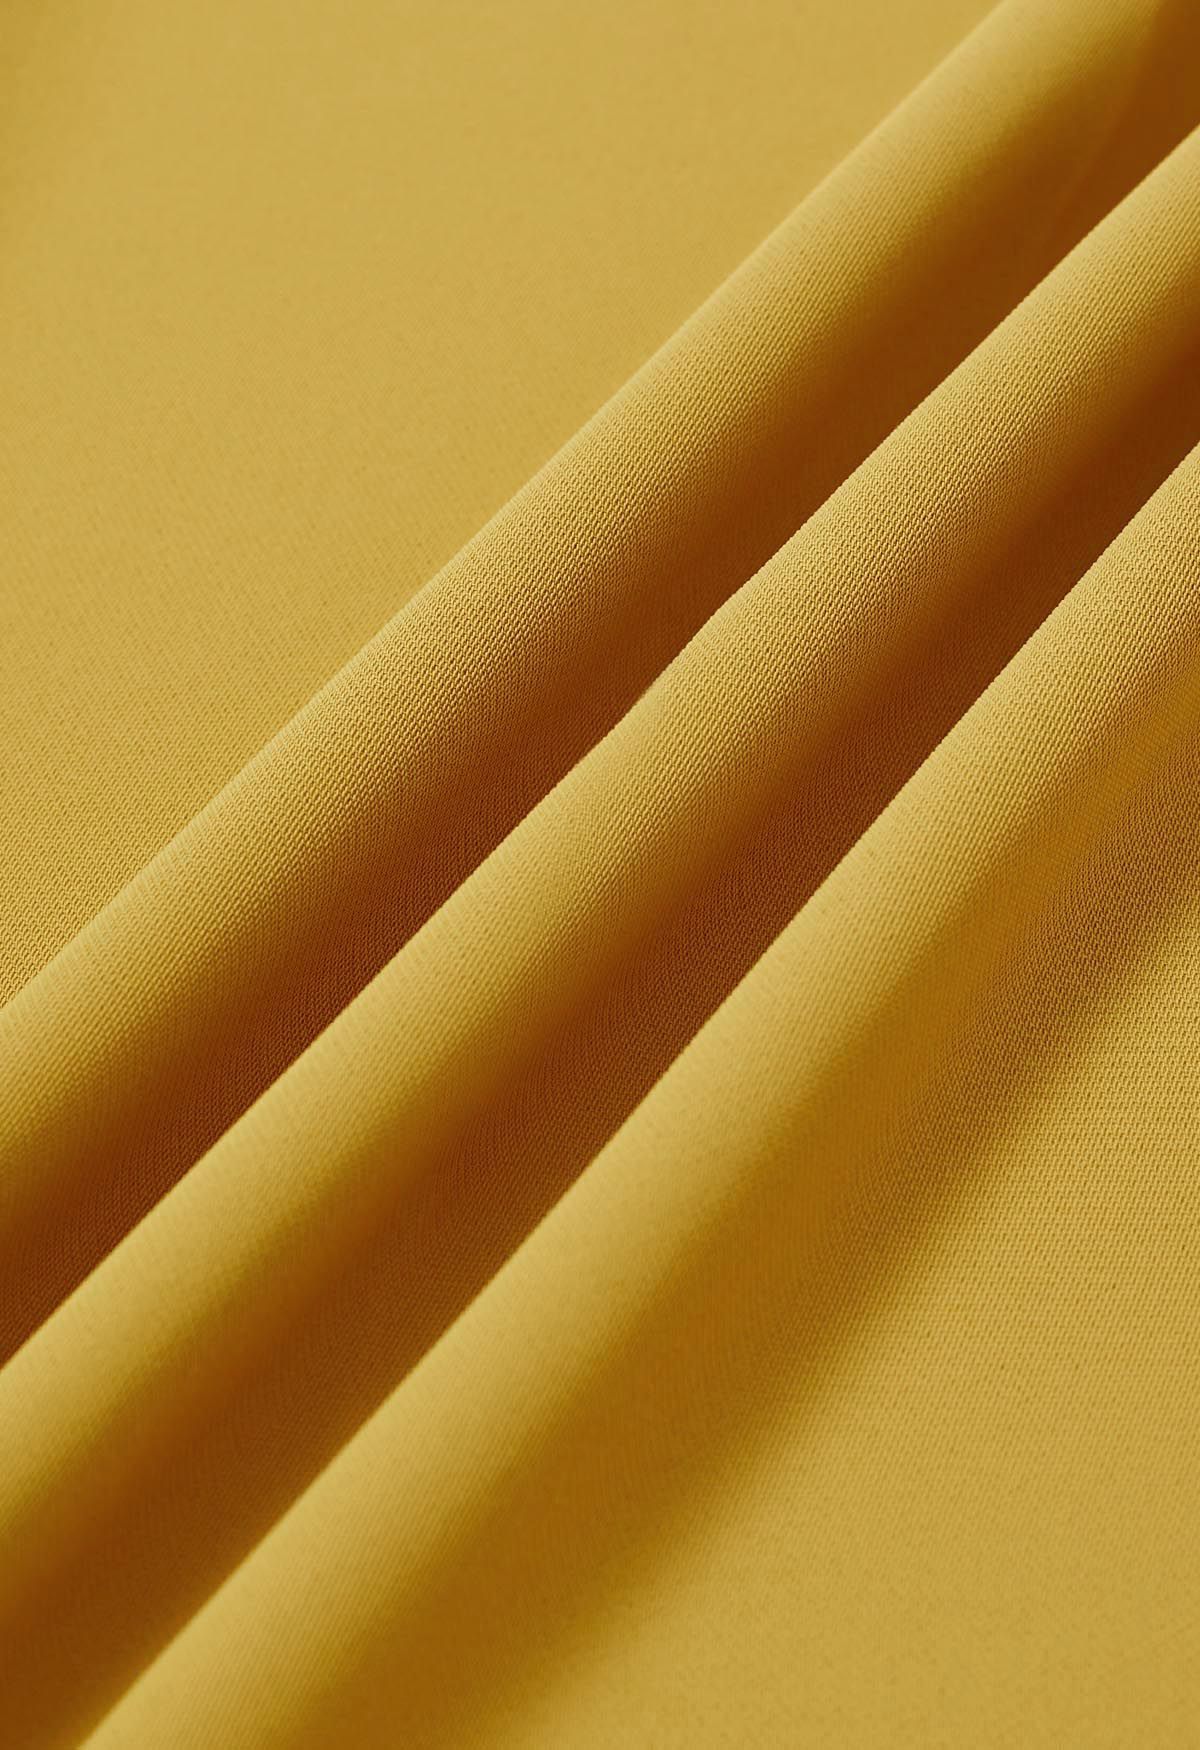 بنطال بخصر مطوي وساق مستقيمة باللون الأصفر